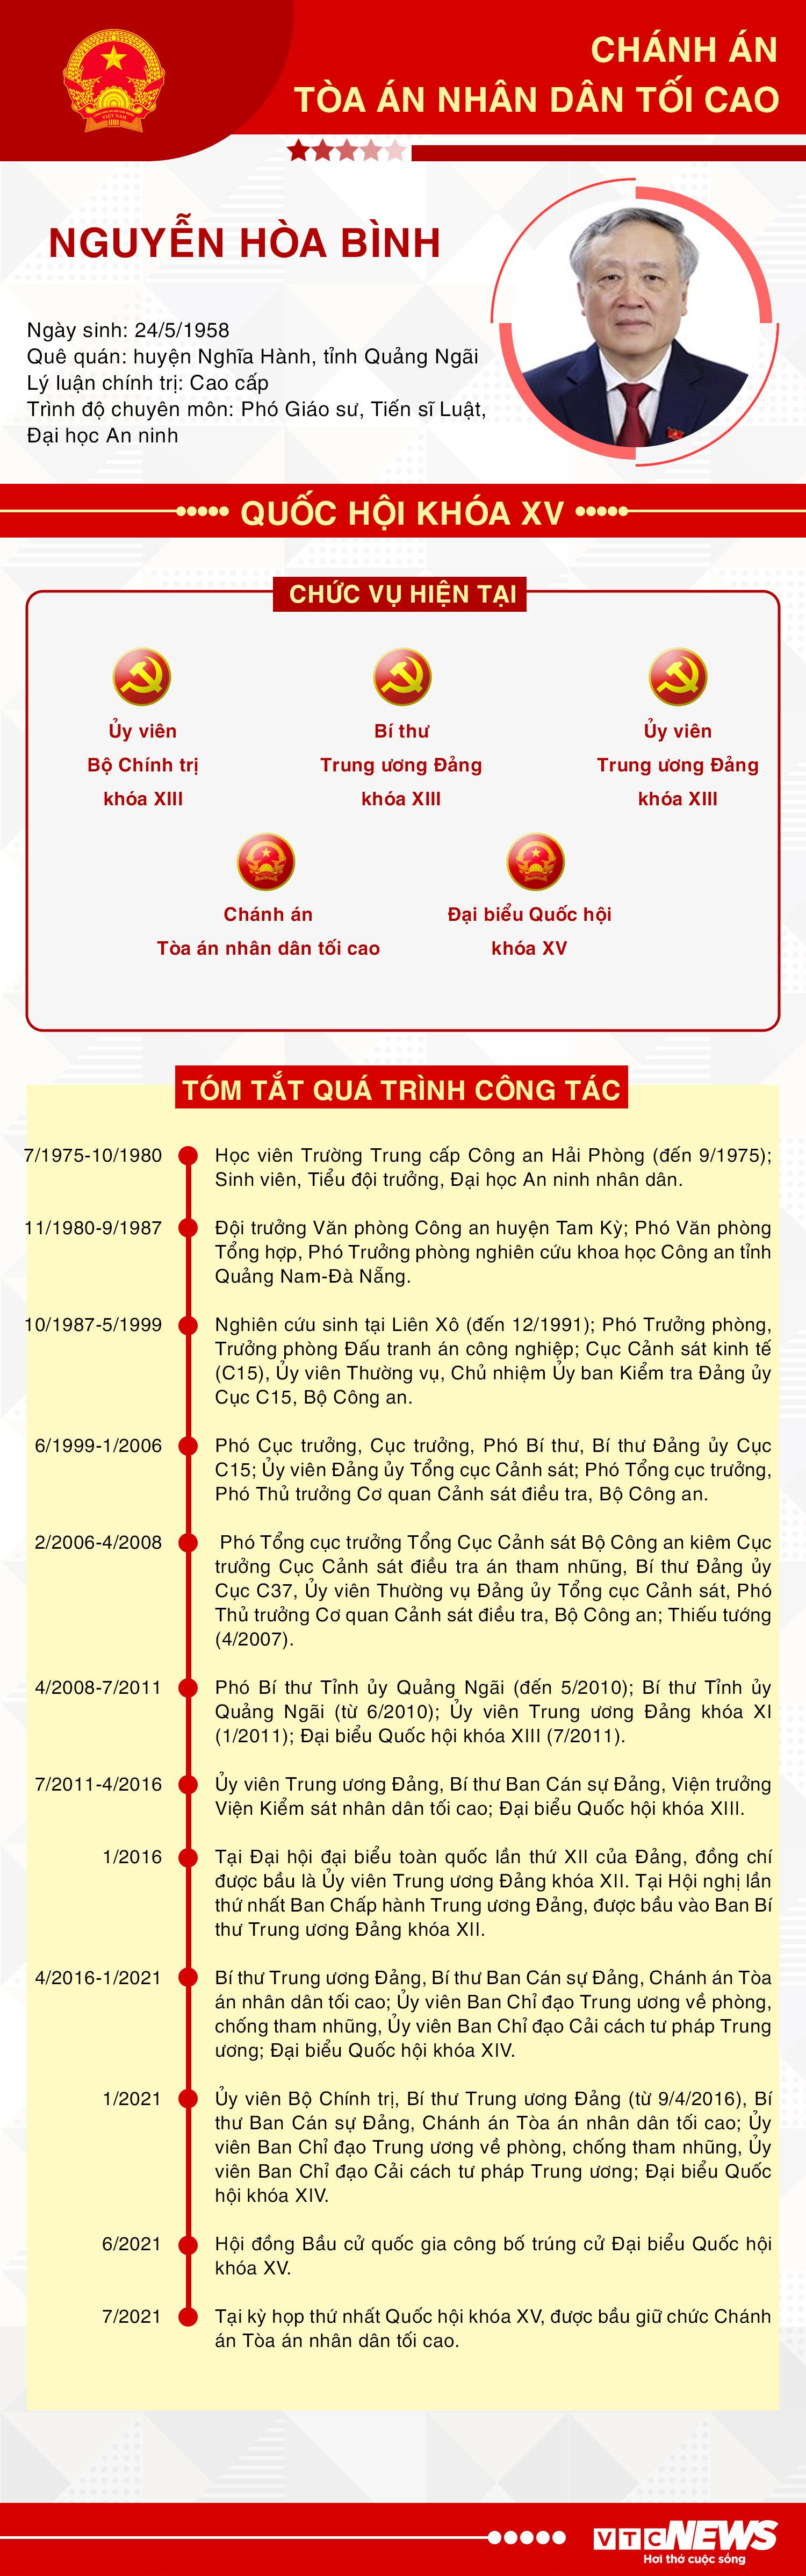 Infographic: Sự nghiệp Chánh án Toà án Nhân dân Tối cao Nguyễn Hòa Bình - 1